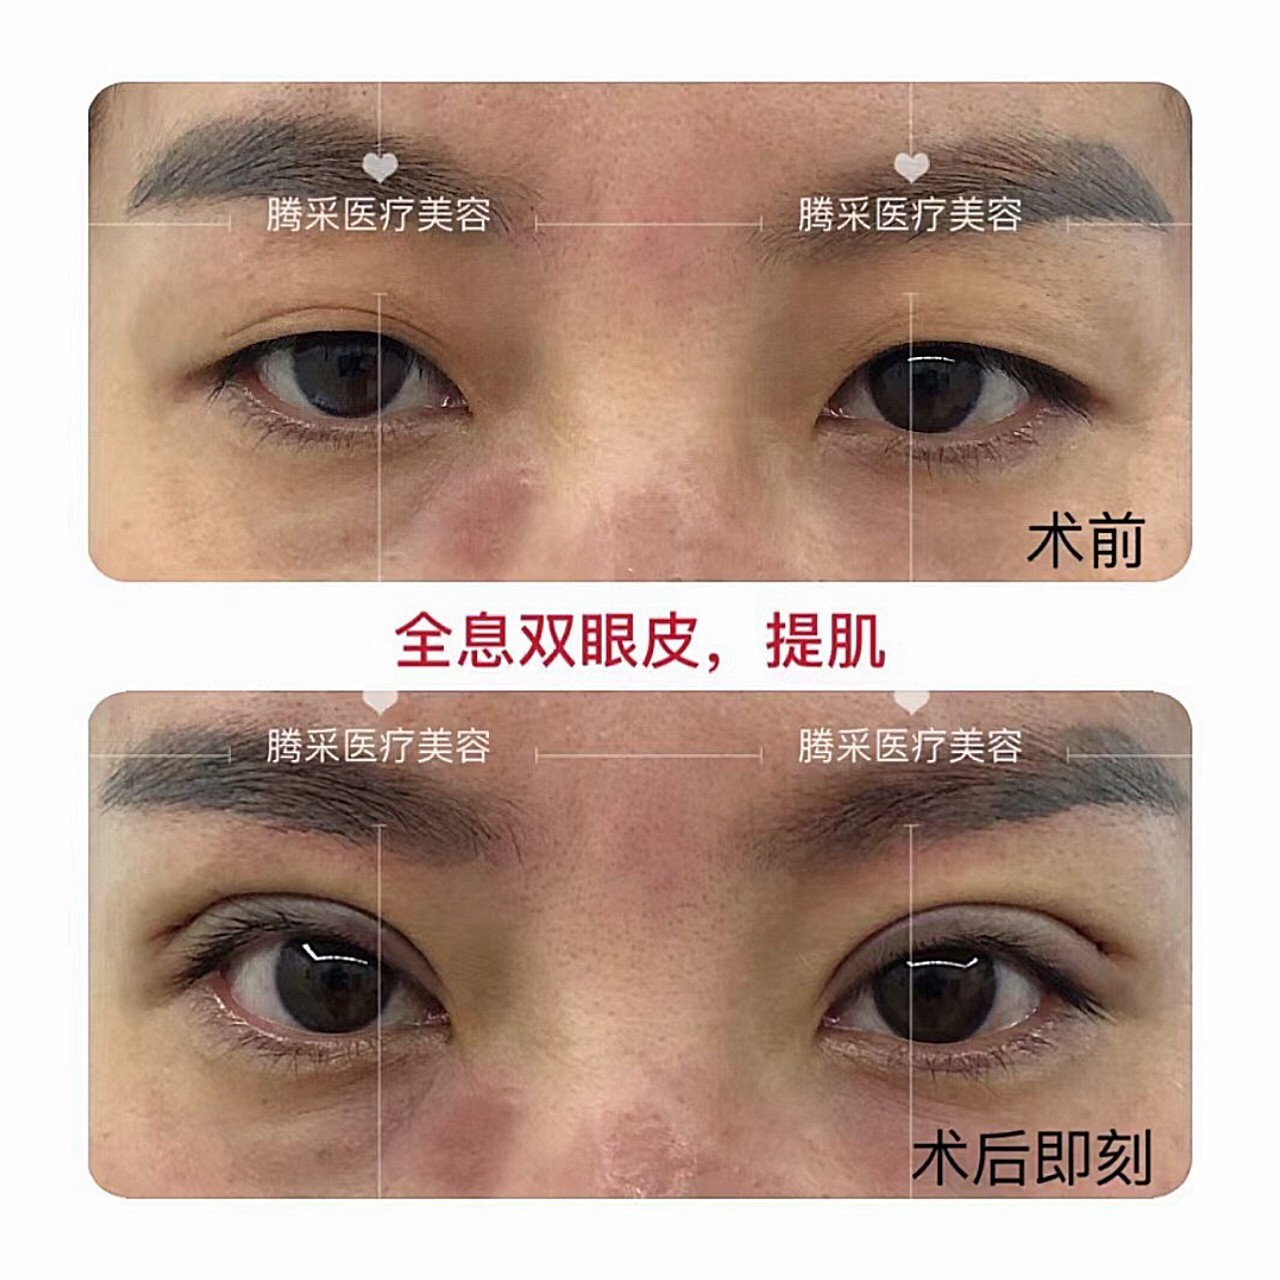 [分享] 單眼外開提眼瞼肌 過程與1個月紀錄 - facelift | PTT消費區